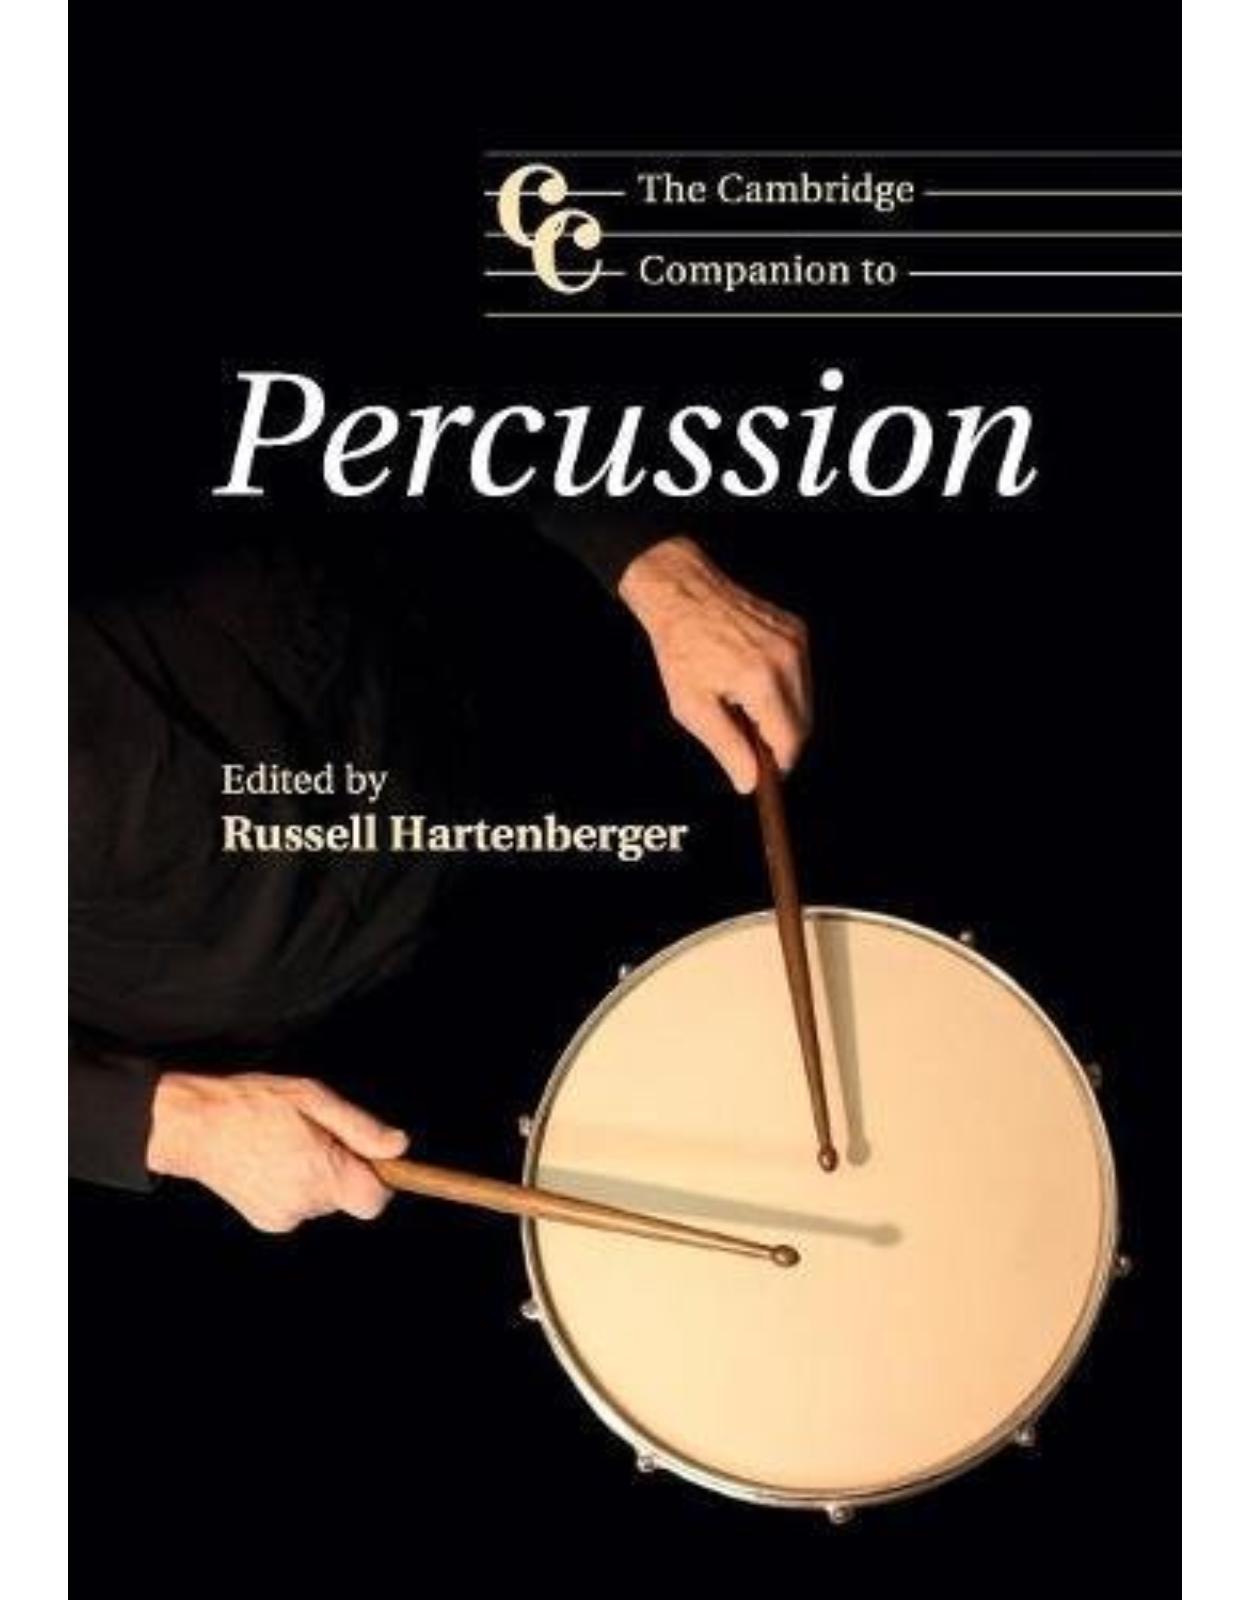 The Cambridge Companion to Percussion (Cambridge Companions to Music)